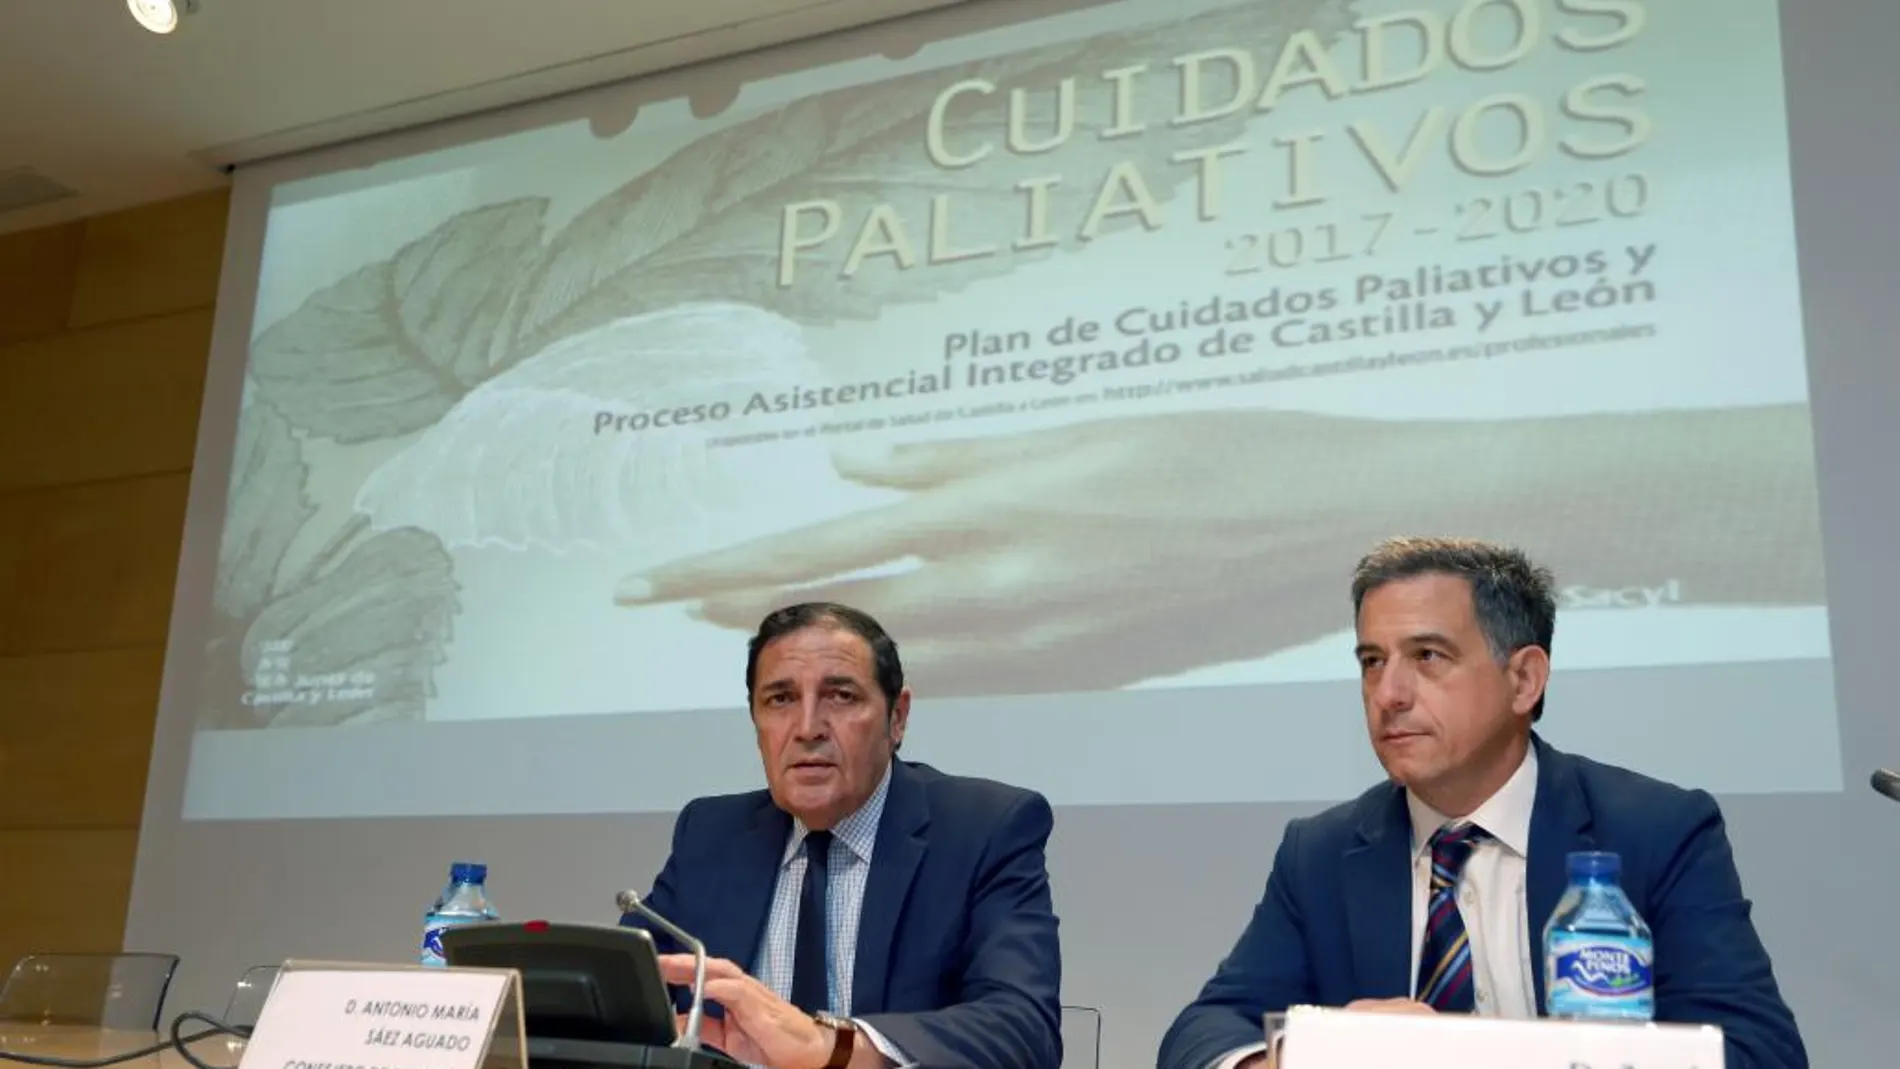 El consejero Antonio Sáez Aguado durante la Jornada de Cuidados Paliativos, acompañado por José Jolín